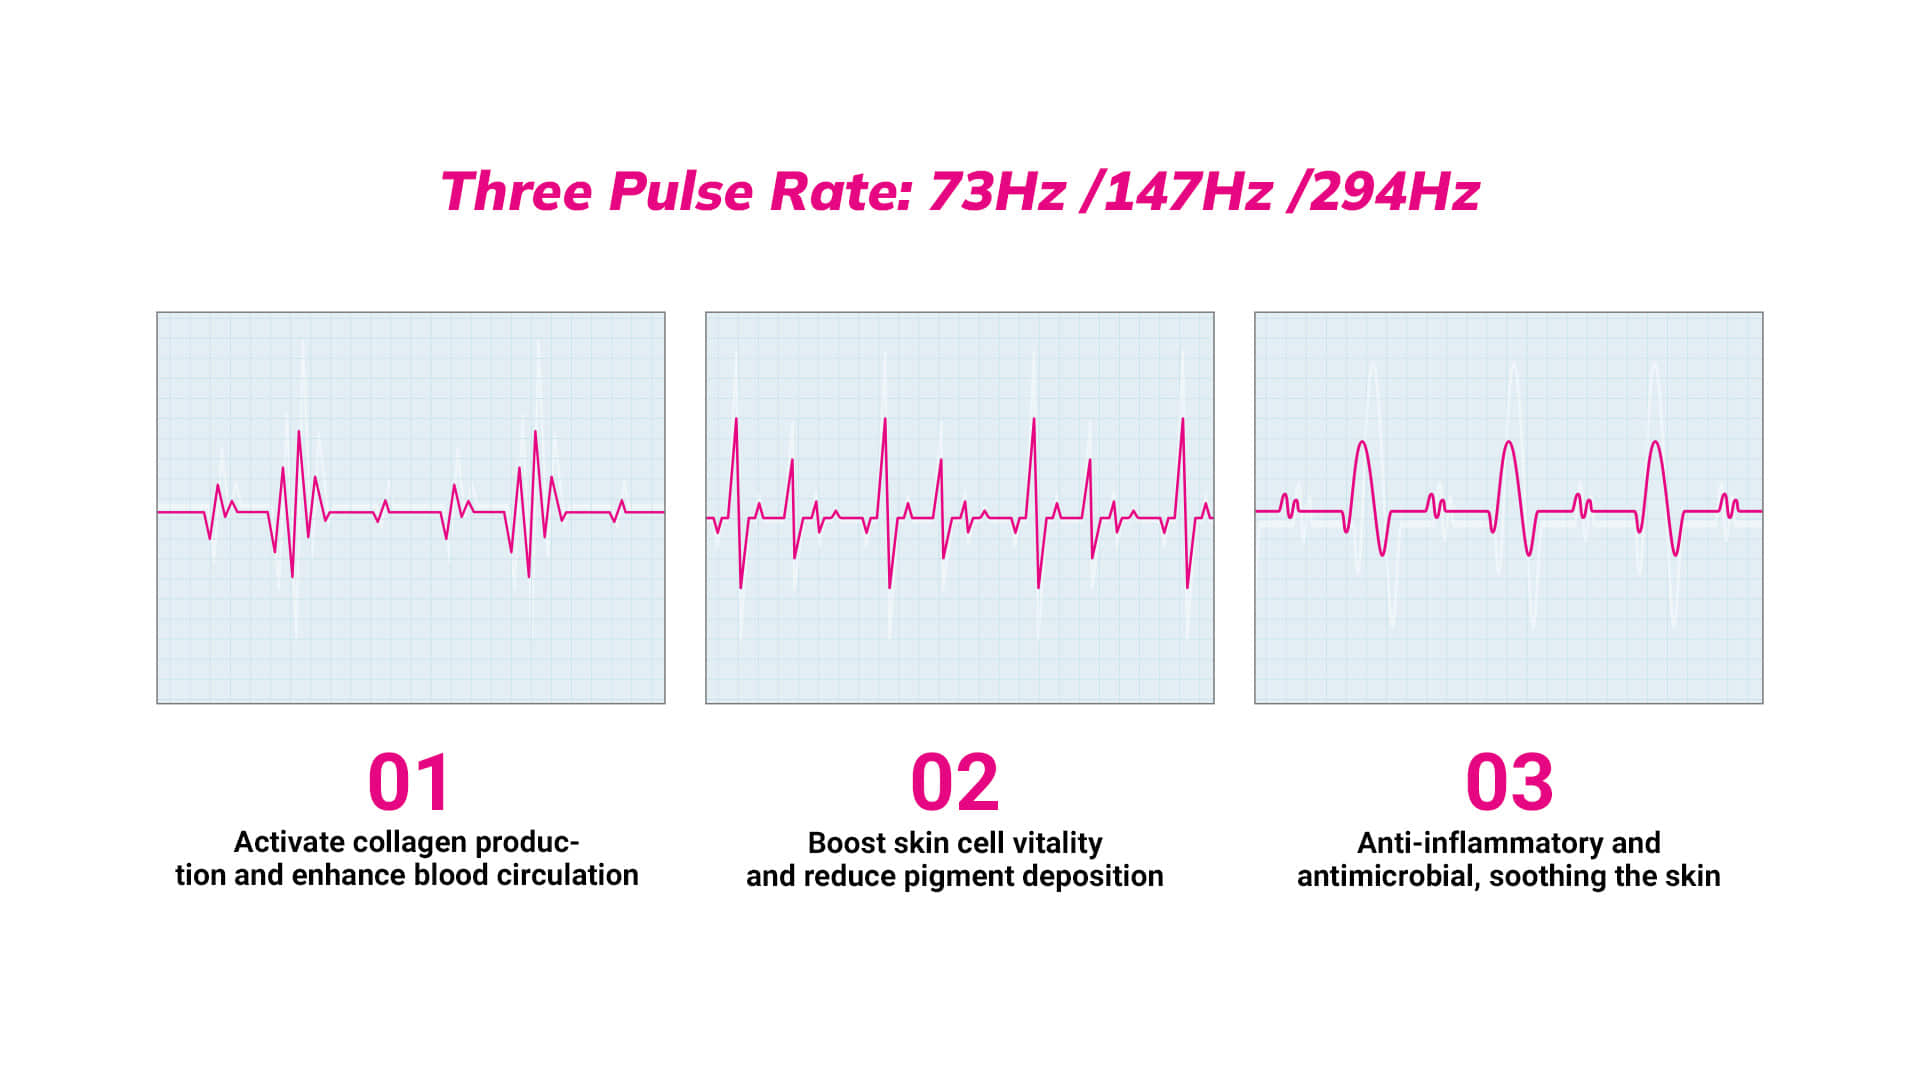 RLB04 Three Pulse Rate 73Hz 147Hz 294Hz_03